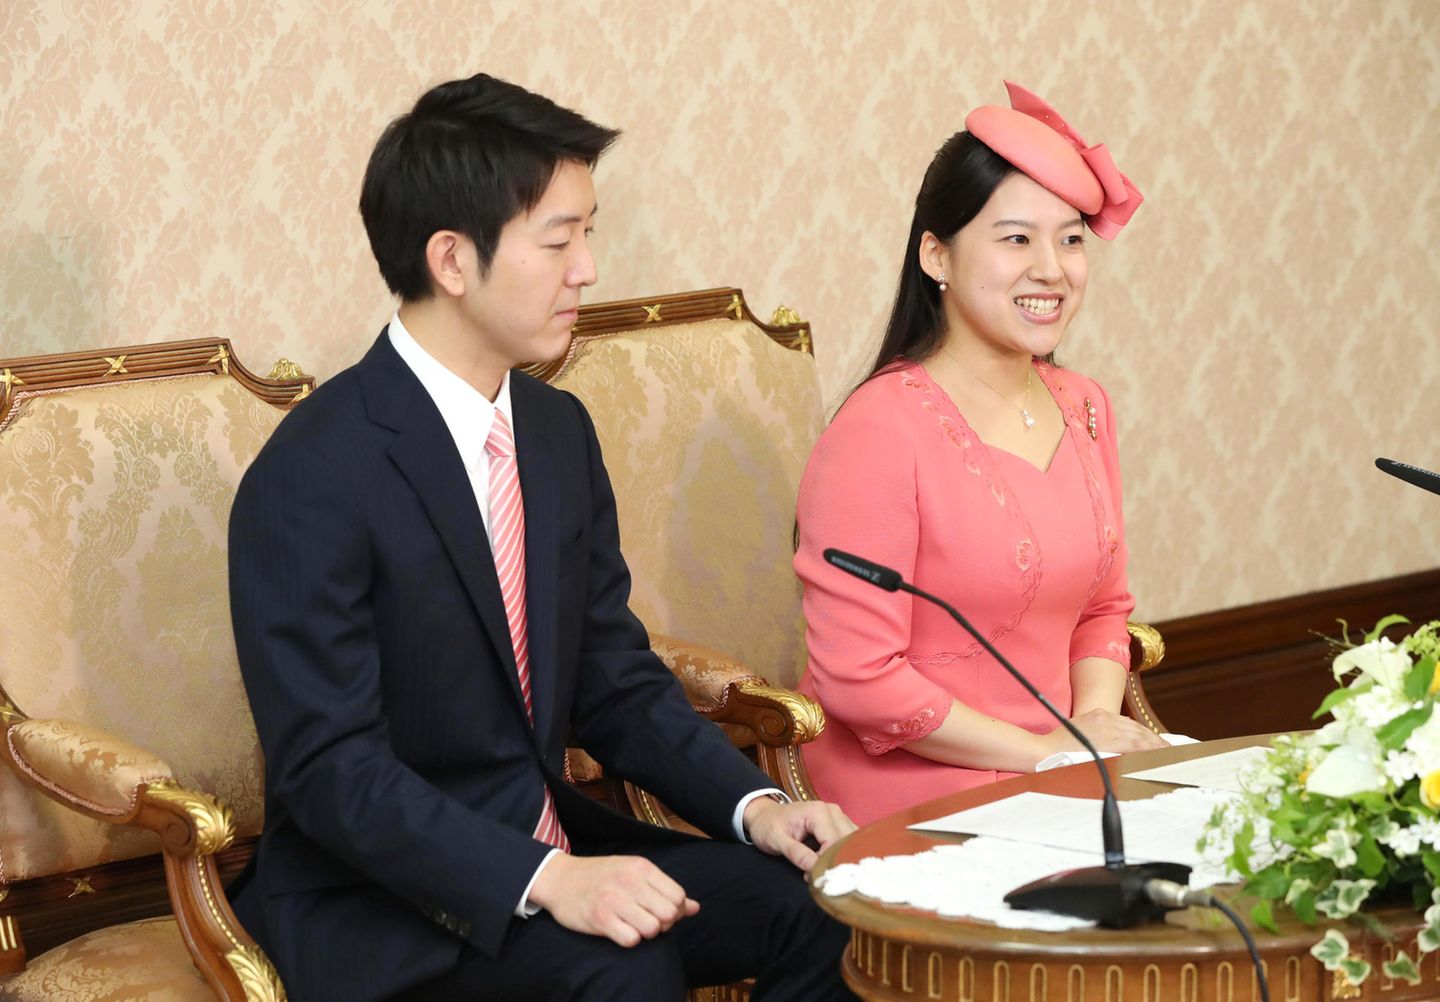 2. Juli 2018  Am 26. Juni wurde die Verlobung von Prinzessin Ayako und Kei Moriya bekannt. Nun geben die Prinzessin und der Geschäftsmann strahlend eine offizielle Pressekonferenz. Geheiratet wird am 29. Oktober beim Meiji-jingu Schrein in Tokio.